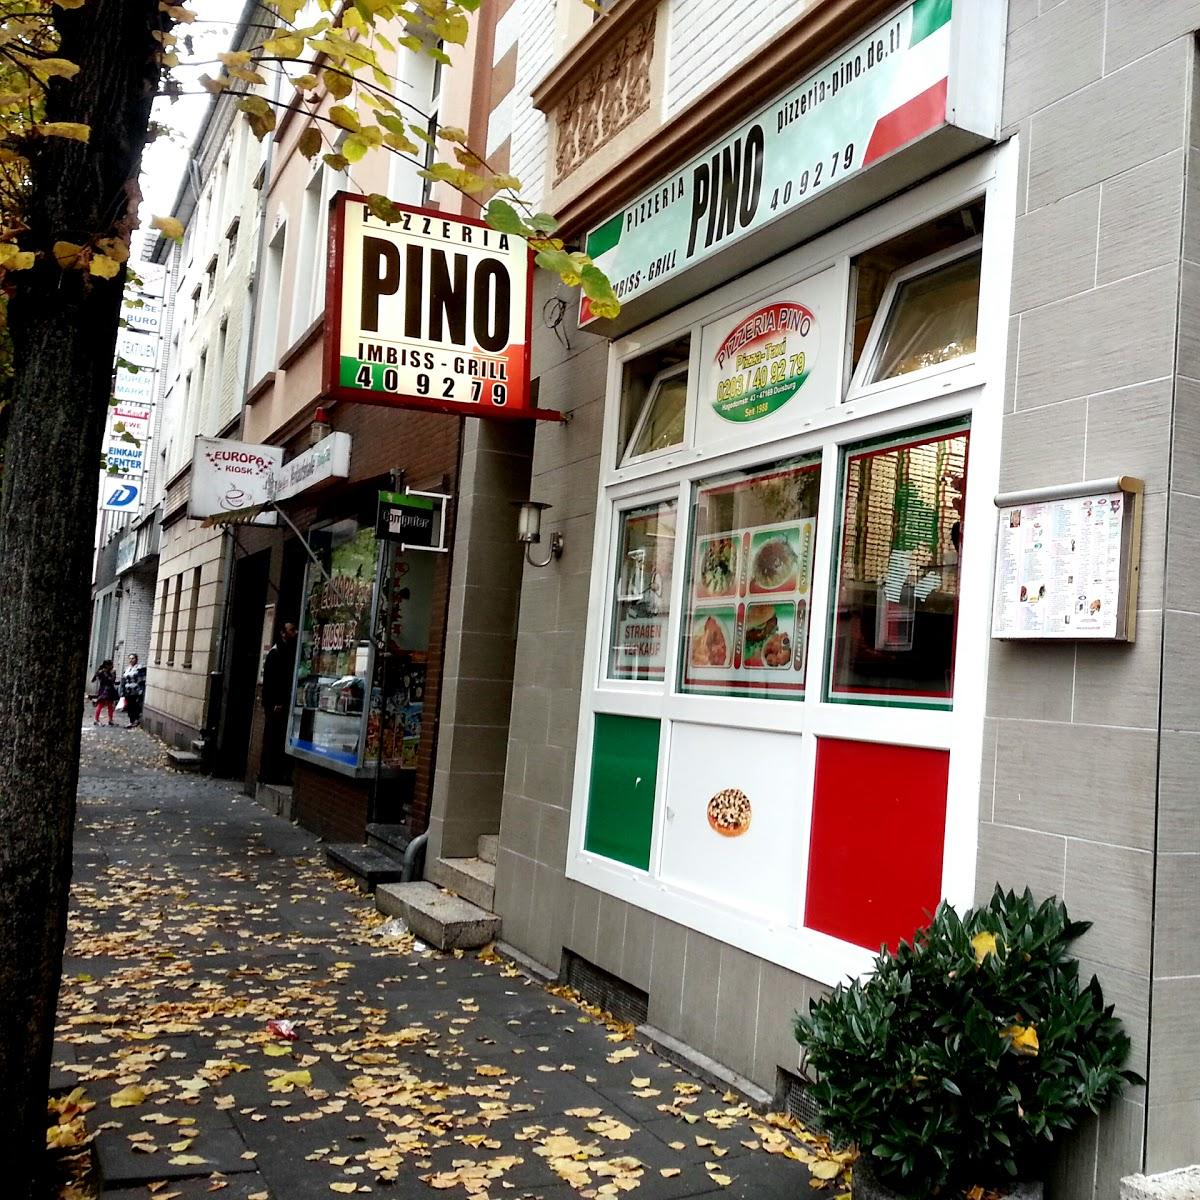 Restaurant "Pizzeria Da Pino" in Duisburg